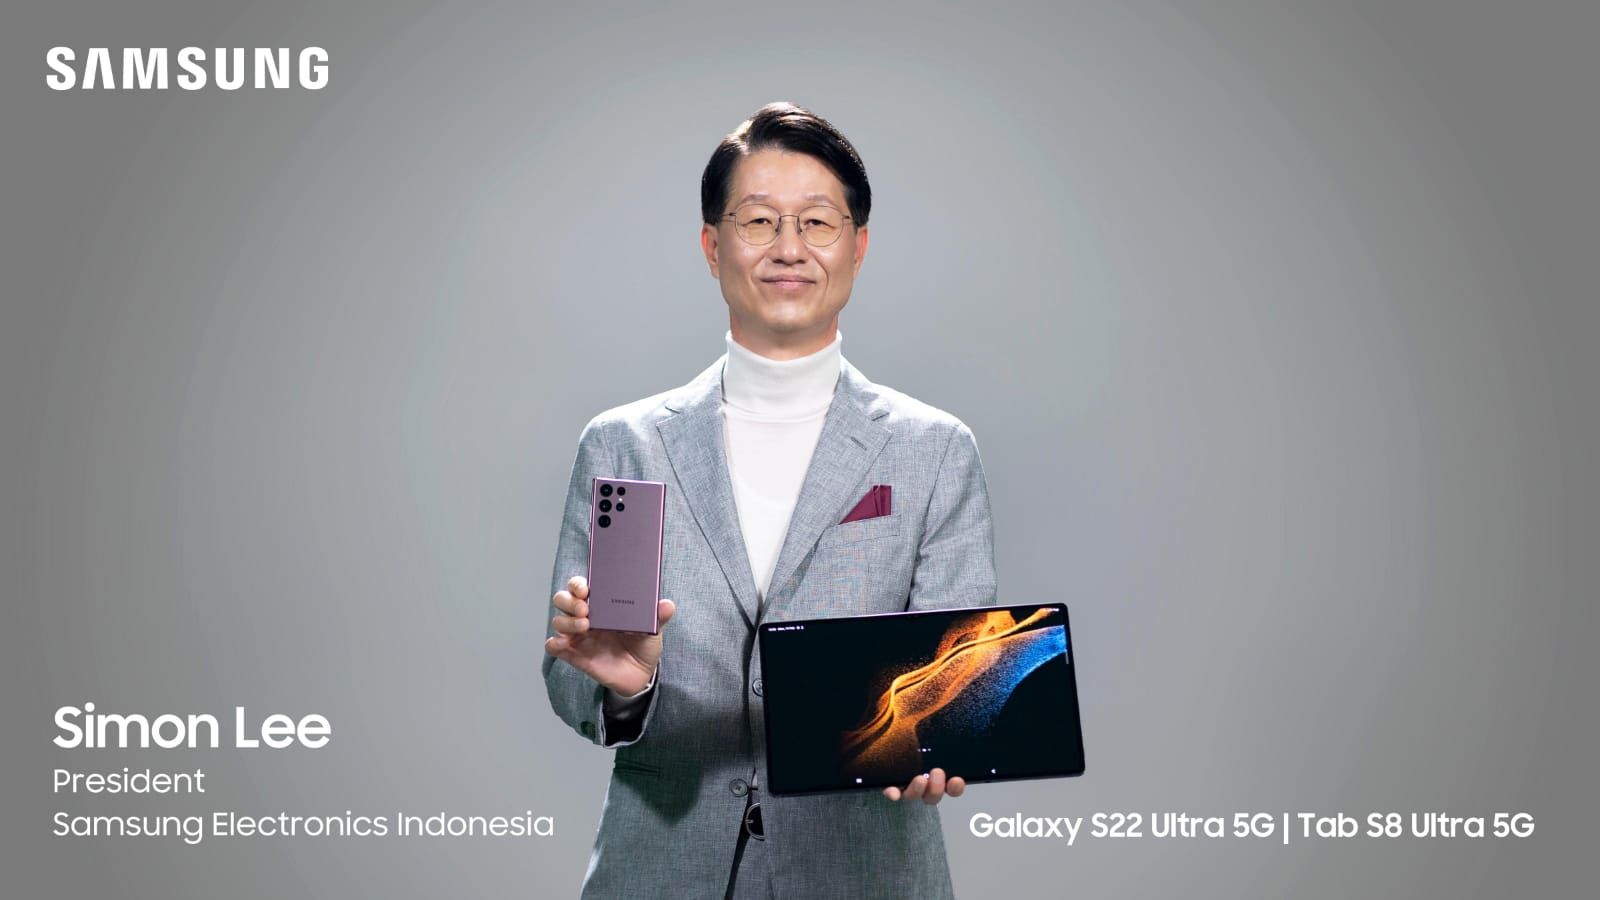 Rompe tus hábitos de una nueva manera con el Samsung Galaxy S22 Serie 5G disponible oficialmente en Indonesia